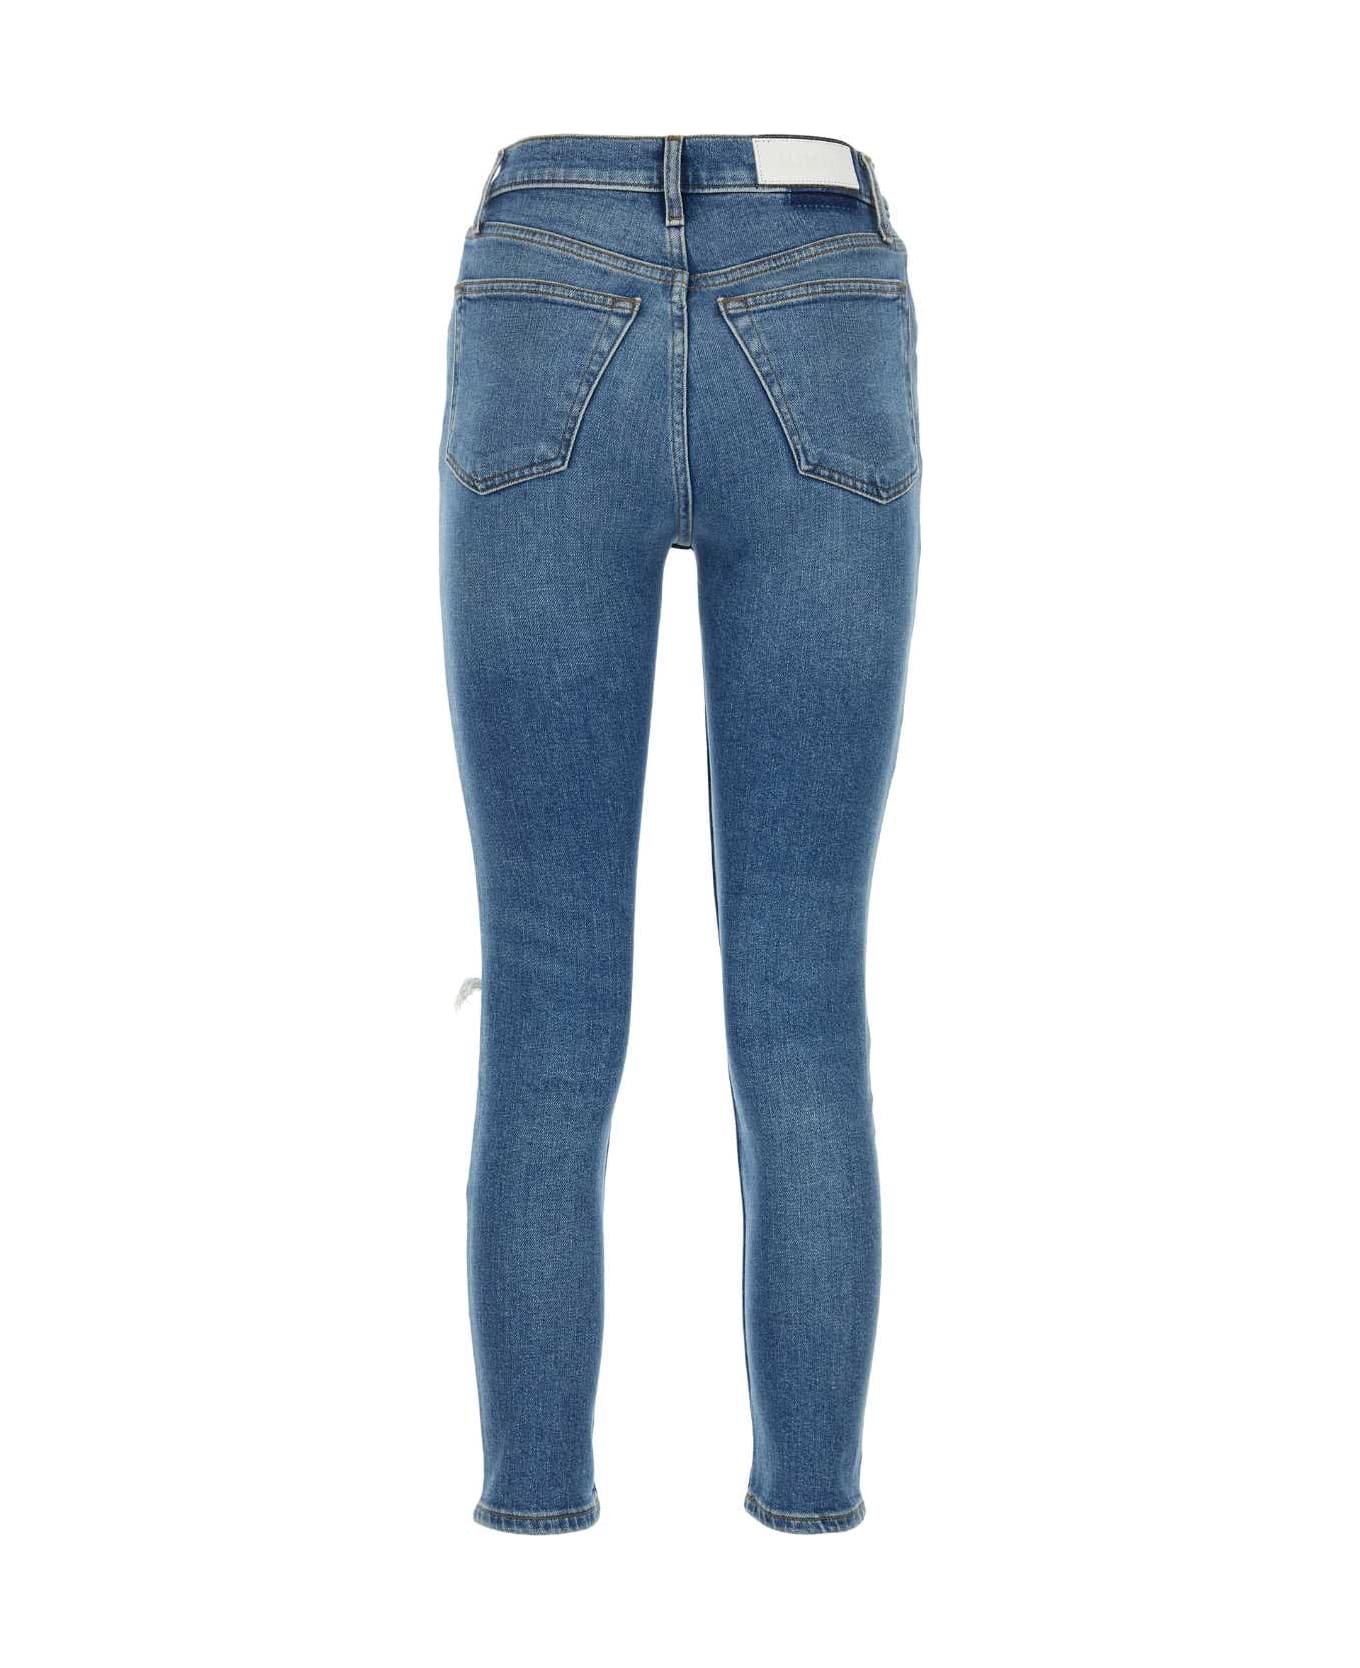 RE/DONE Stretch Denim Jeans - WORNBROOKBLUE